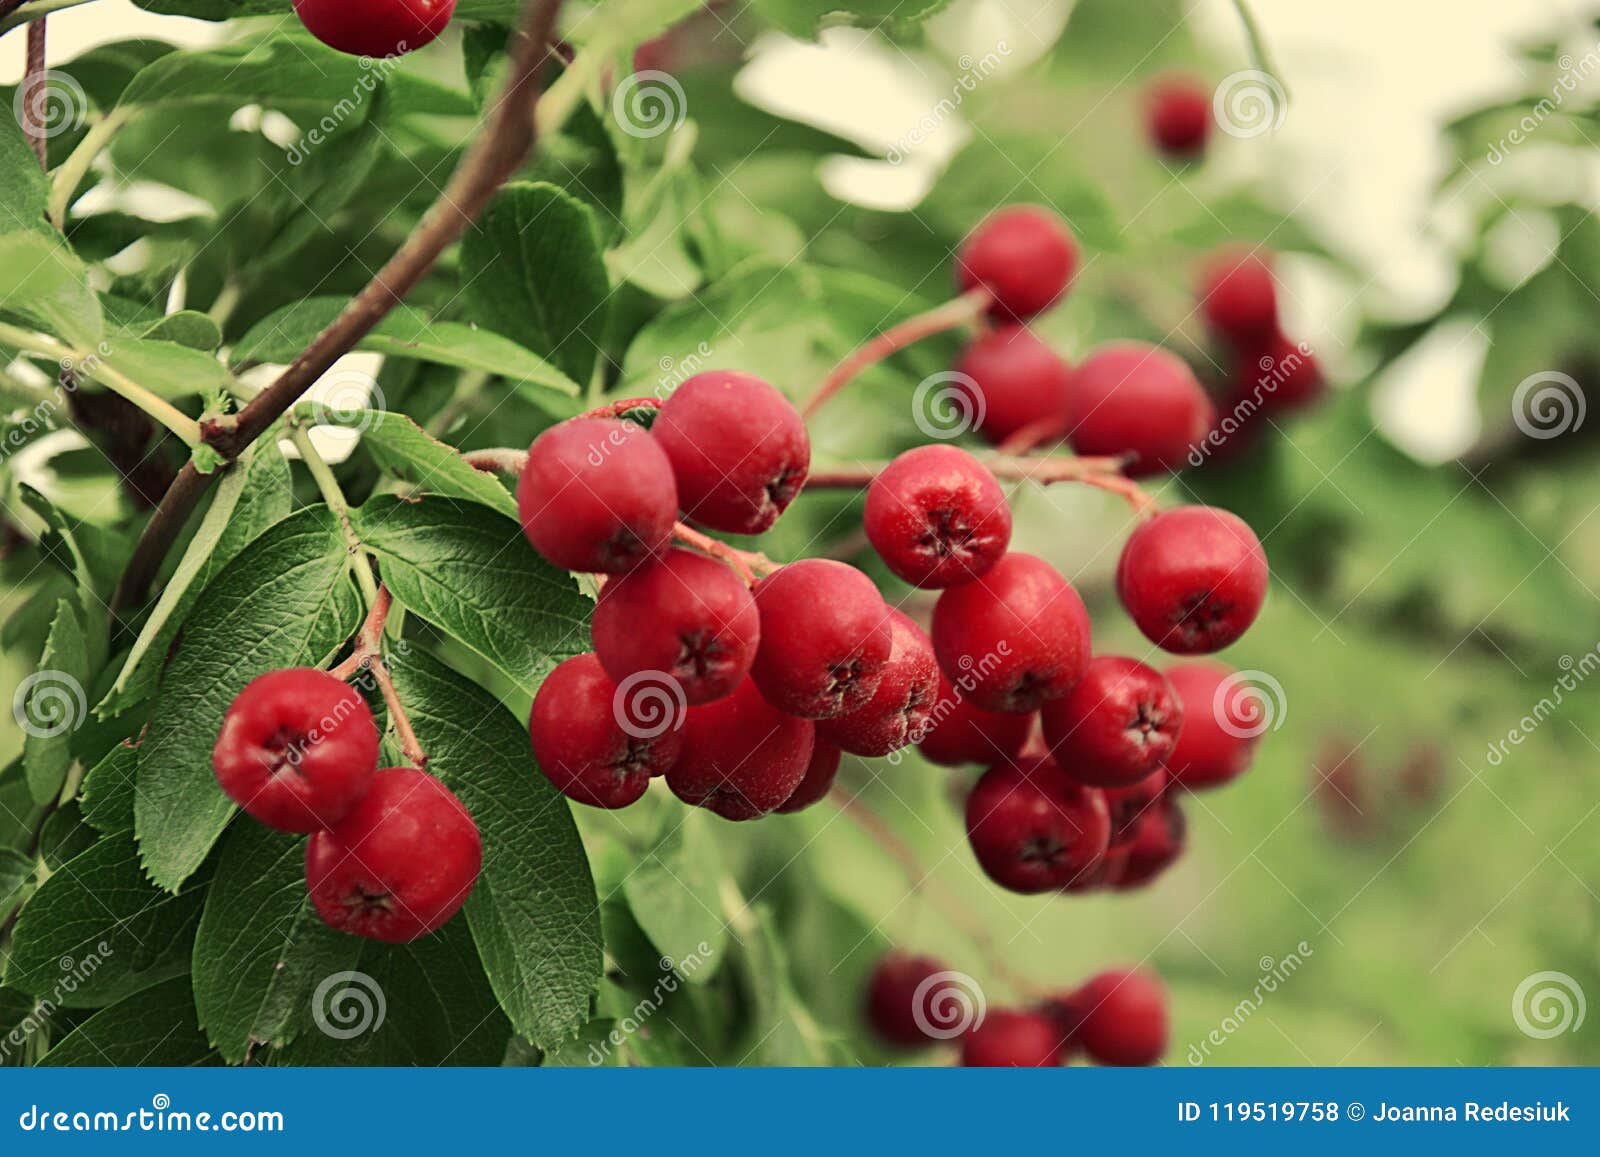 شجرة بها ثمار حمراء صغيرة في الخريف